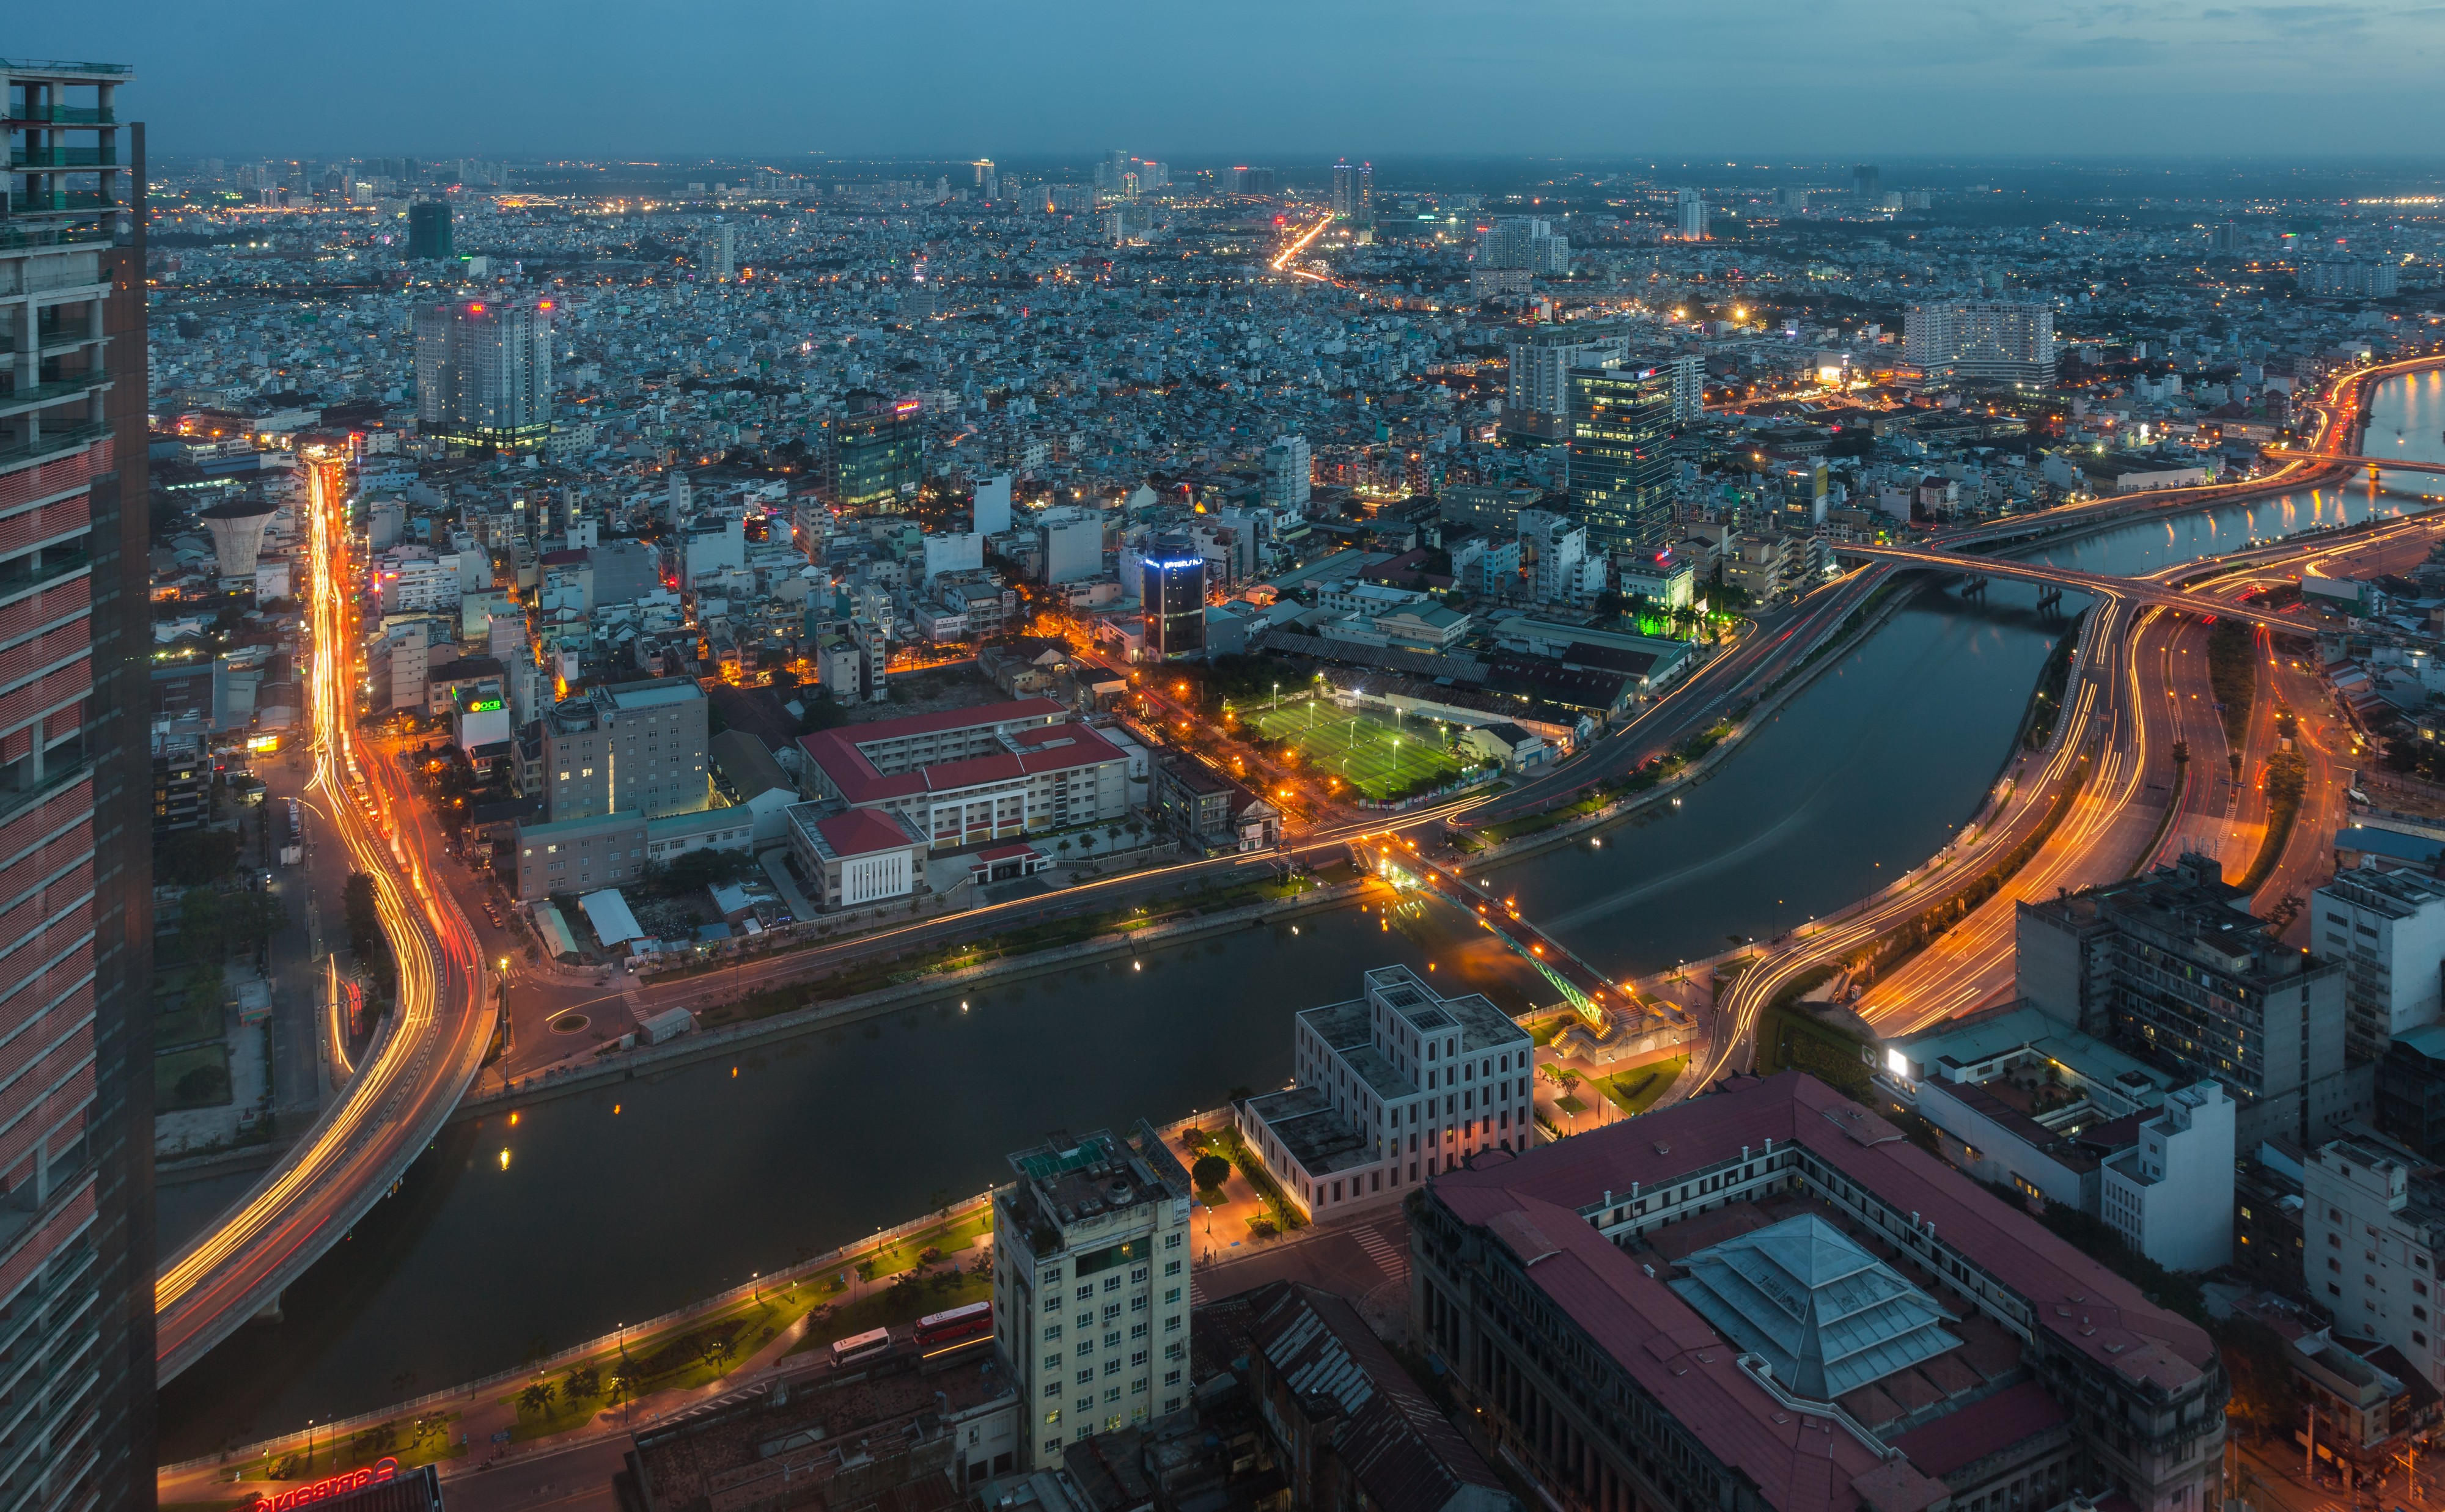 Vista de Ciudad Ho Chi Minh desde Bitexco Financial Tower, Vietnam, 2013-08-14, DD 09